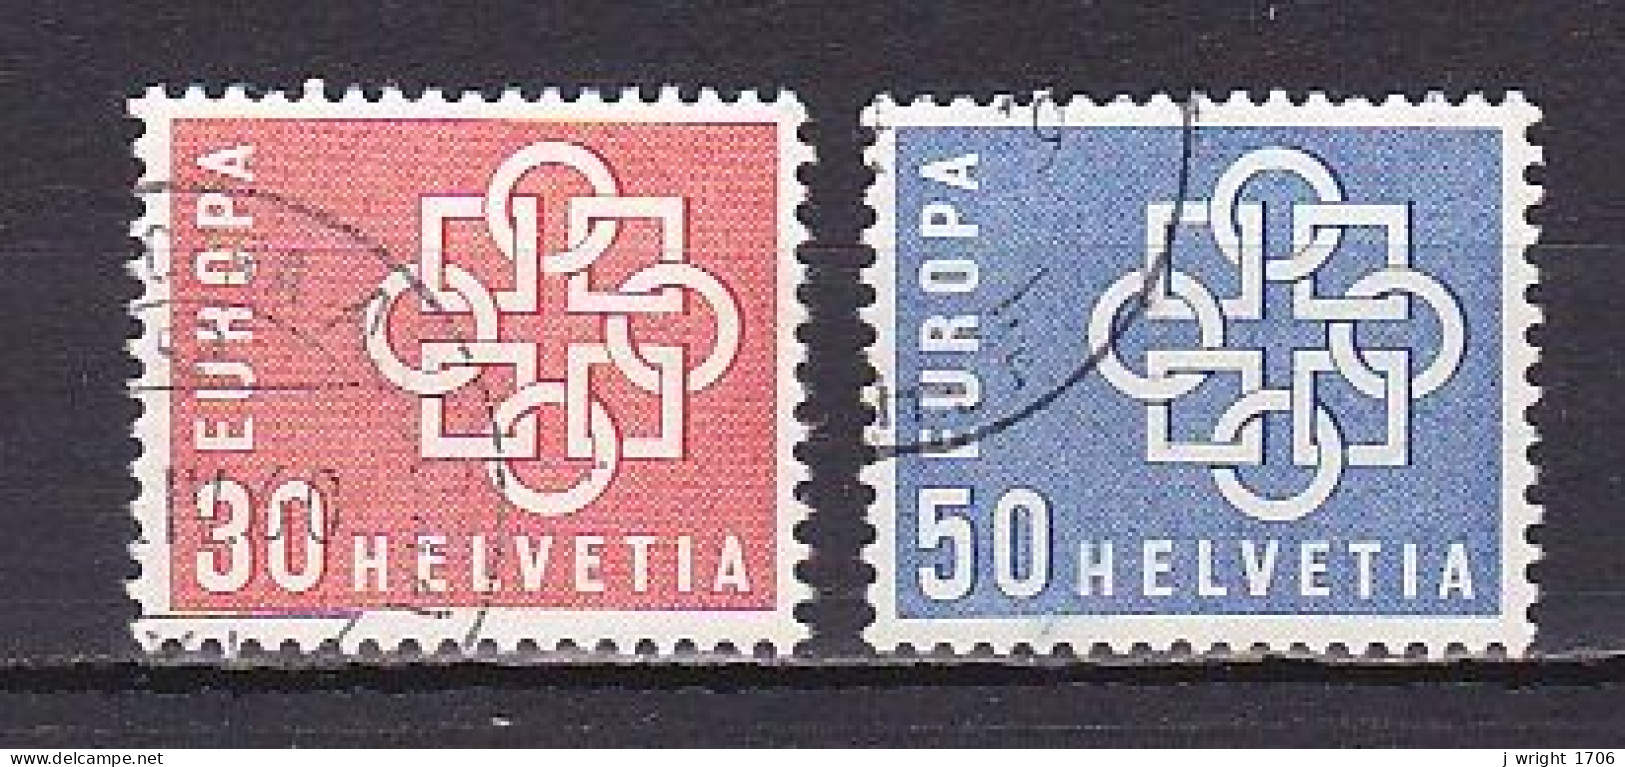 Switzerland, 1959, Europa Issue, Set, USED - Gebraucht